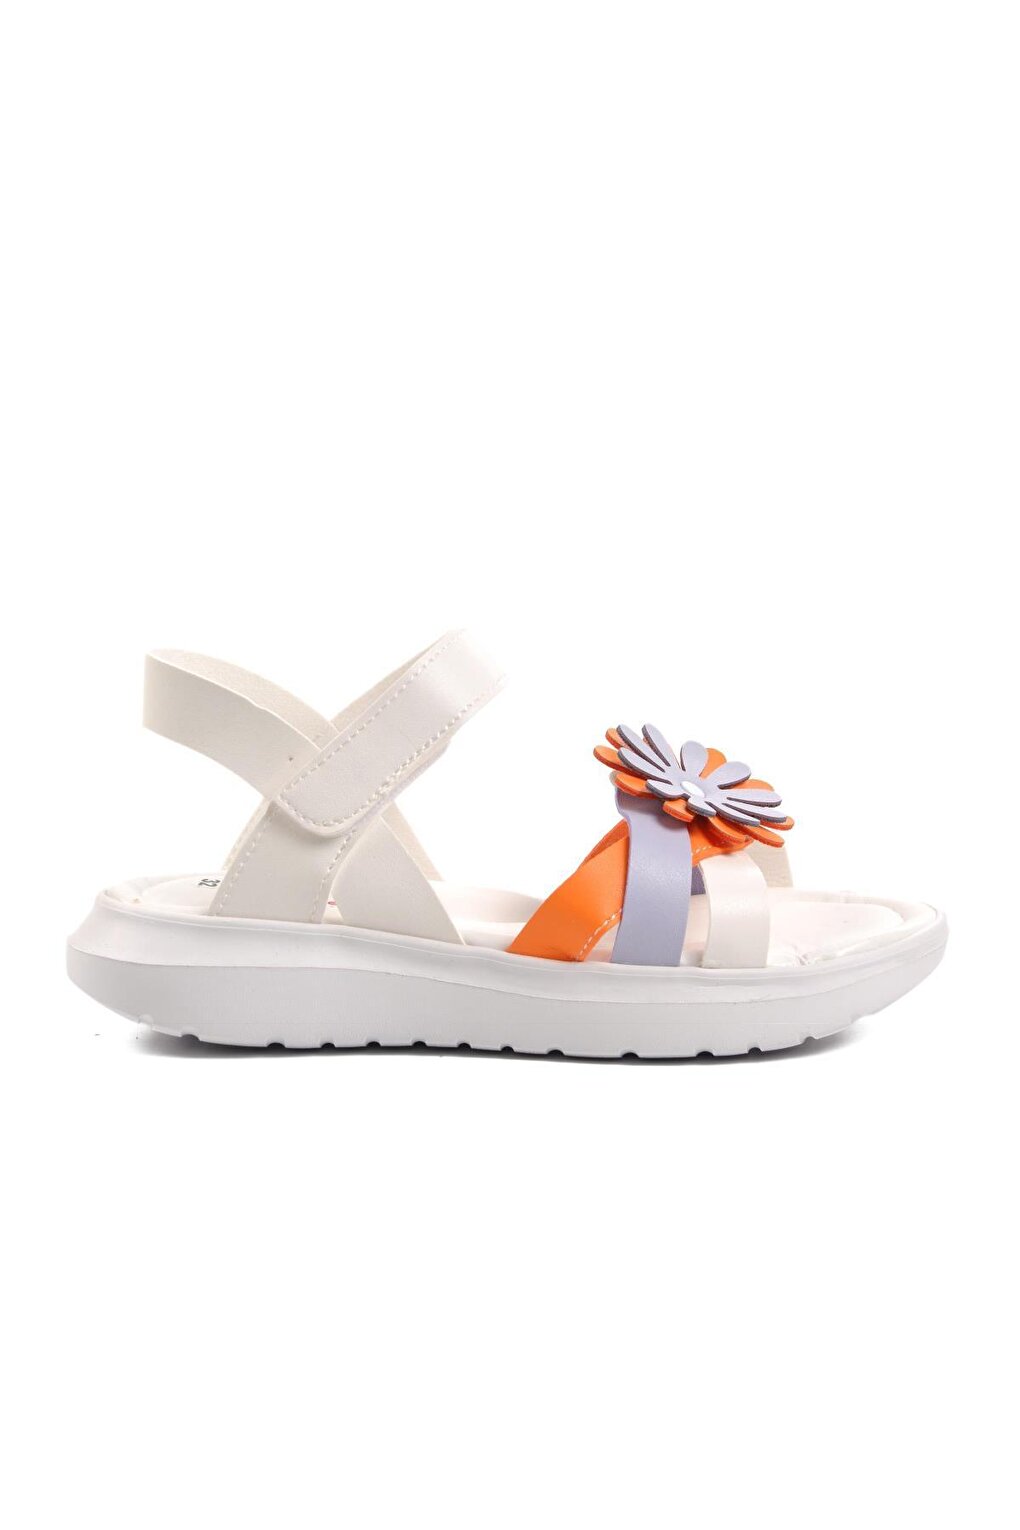 Şng 8010-F Бело-оранжевые сандалии для девочек Ayakmod şng 8020 f сандалии для девочек бело оранжево сиреневые ayakmod